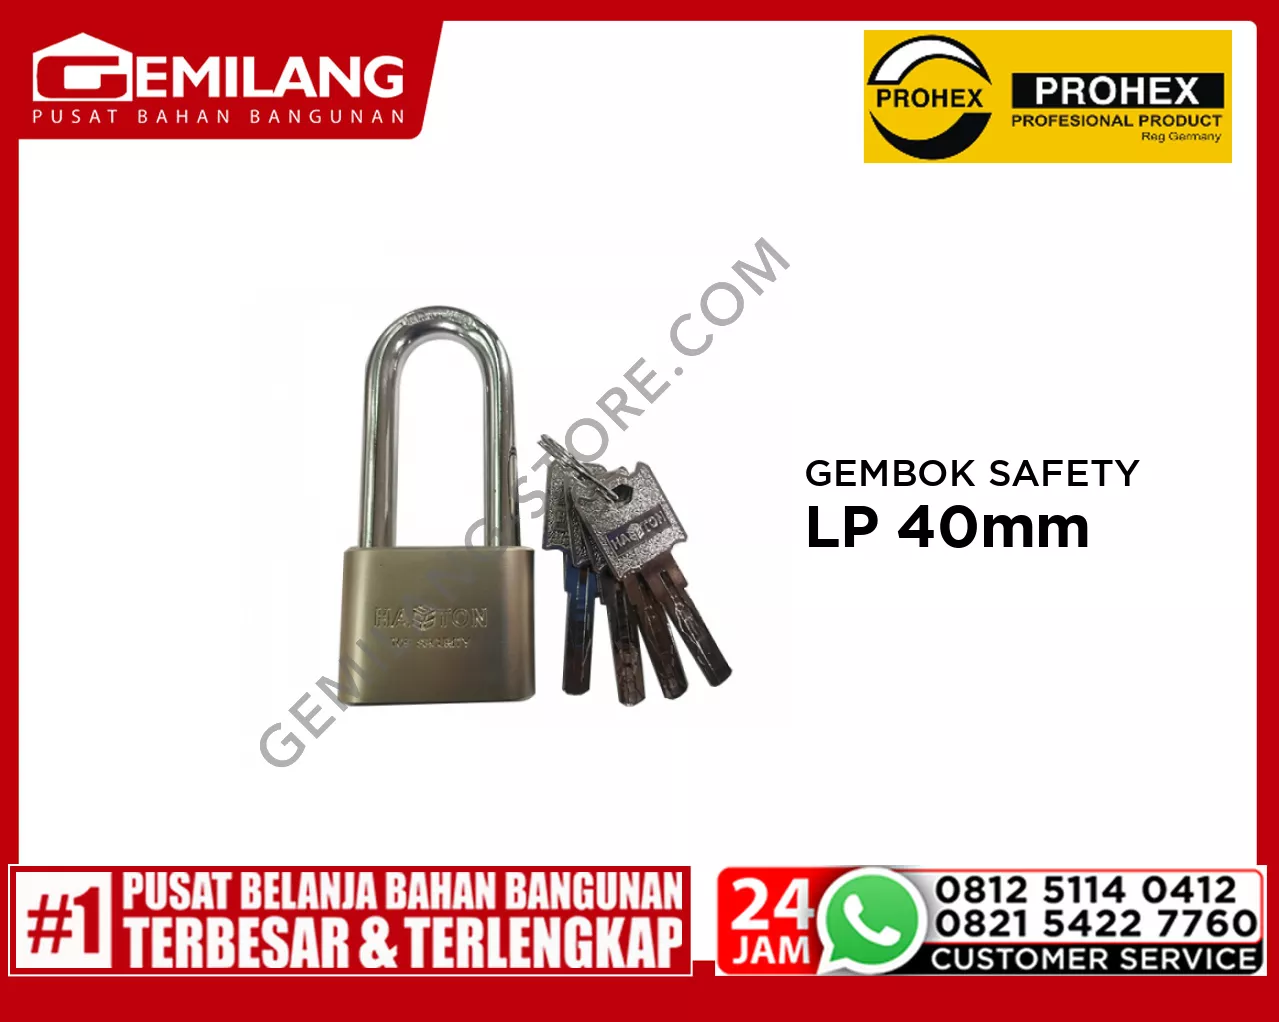 PROHEX GEMBOK SAFETY LP 40mm (1092-017)